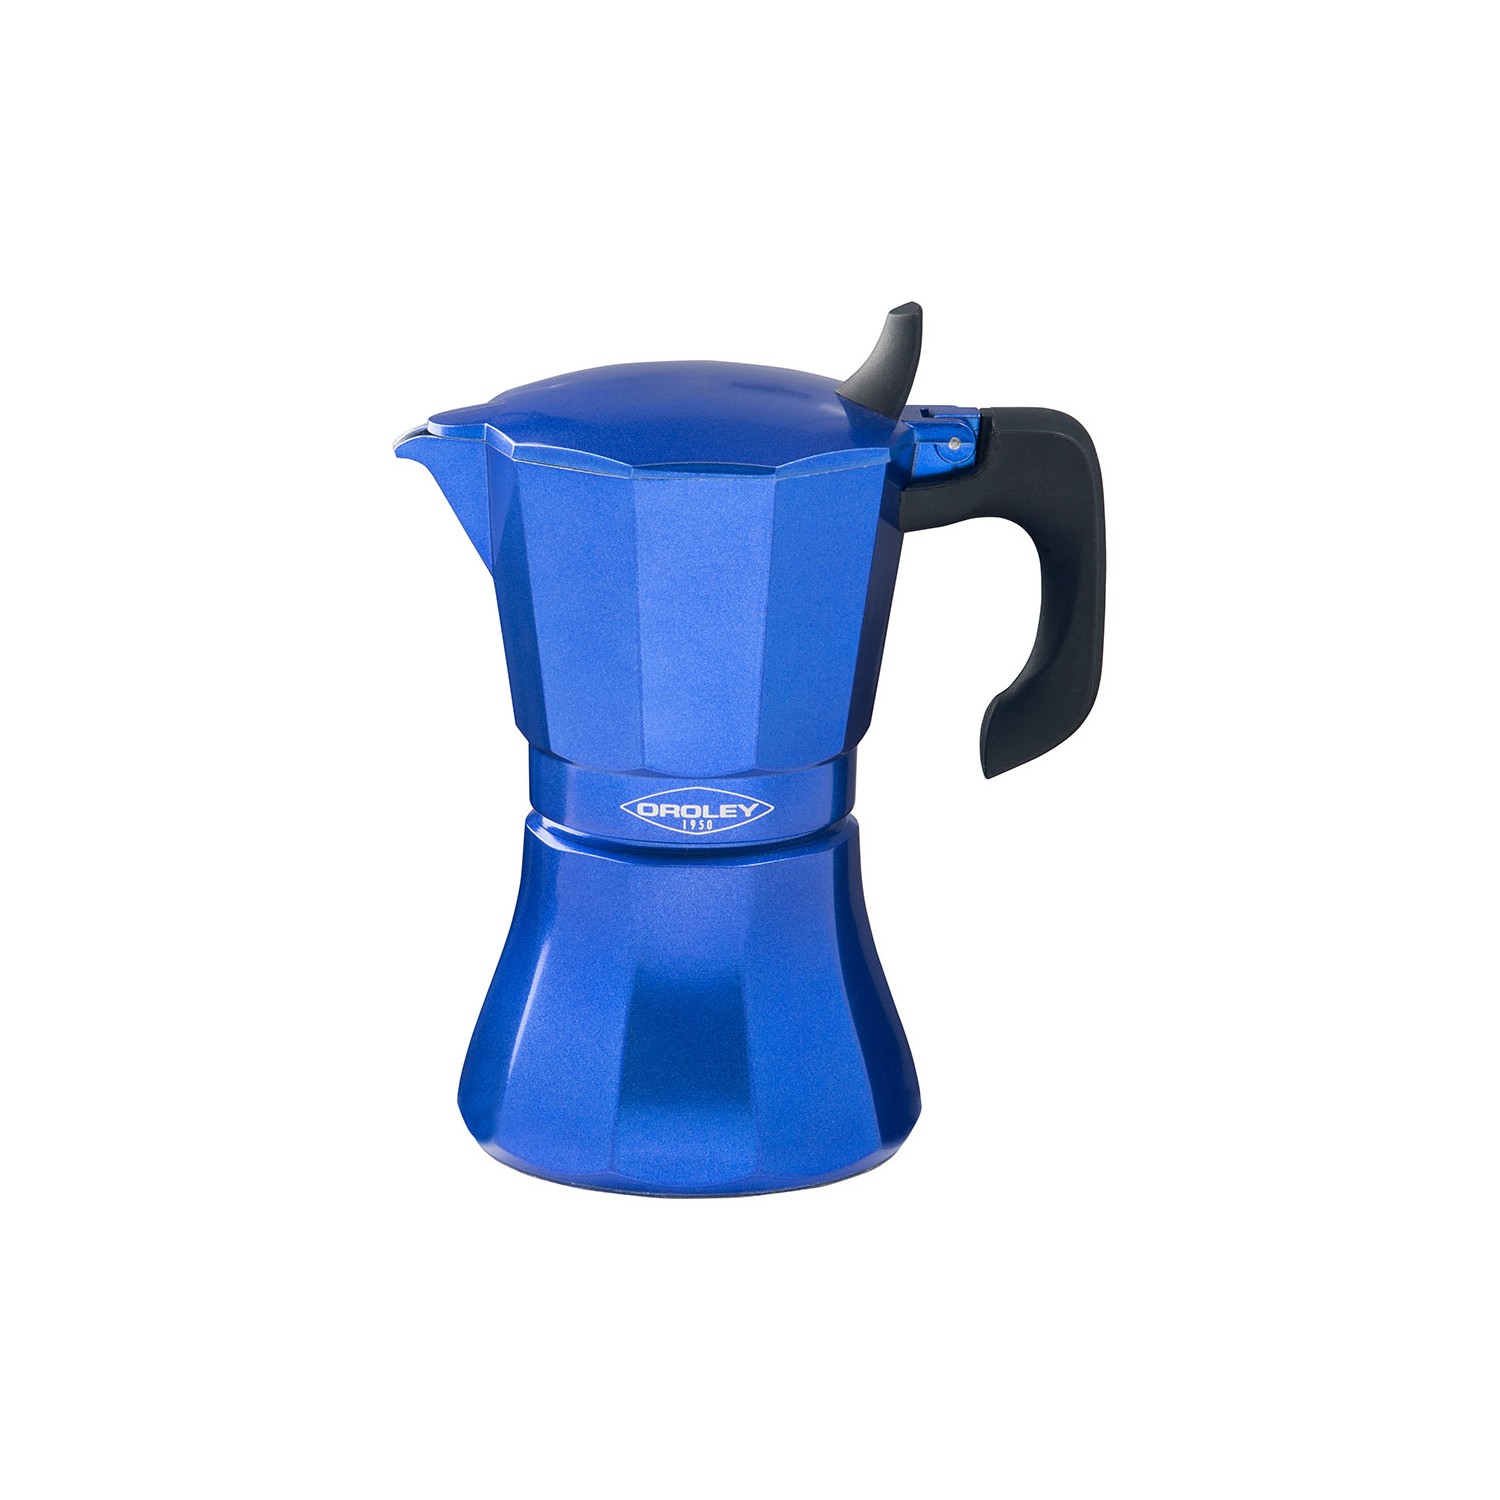 Cafetera de aluminio de 6 tazas mod: "petra" color azul oroley